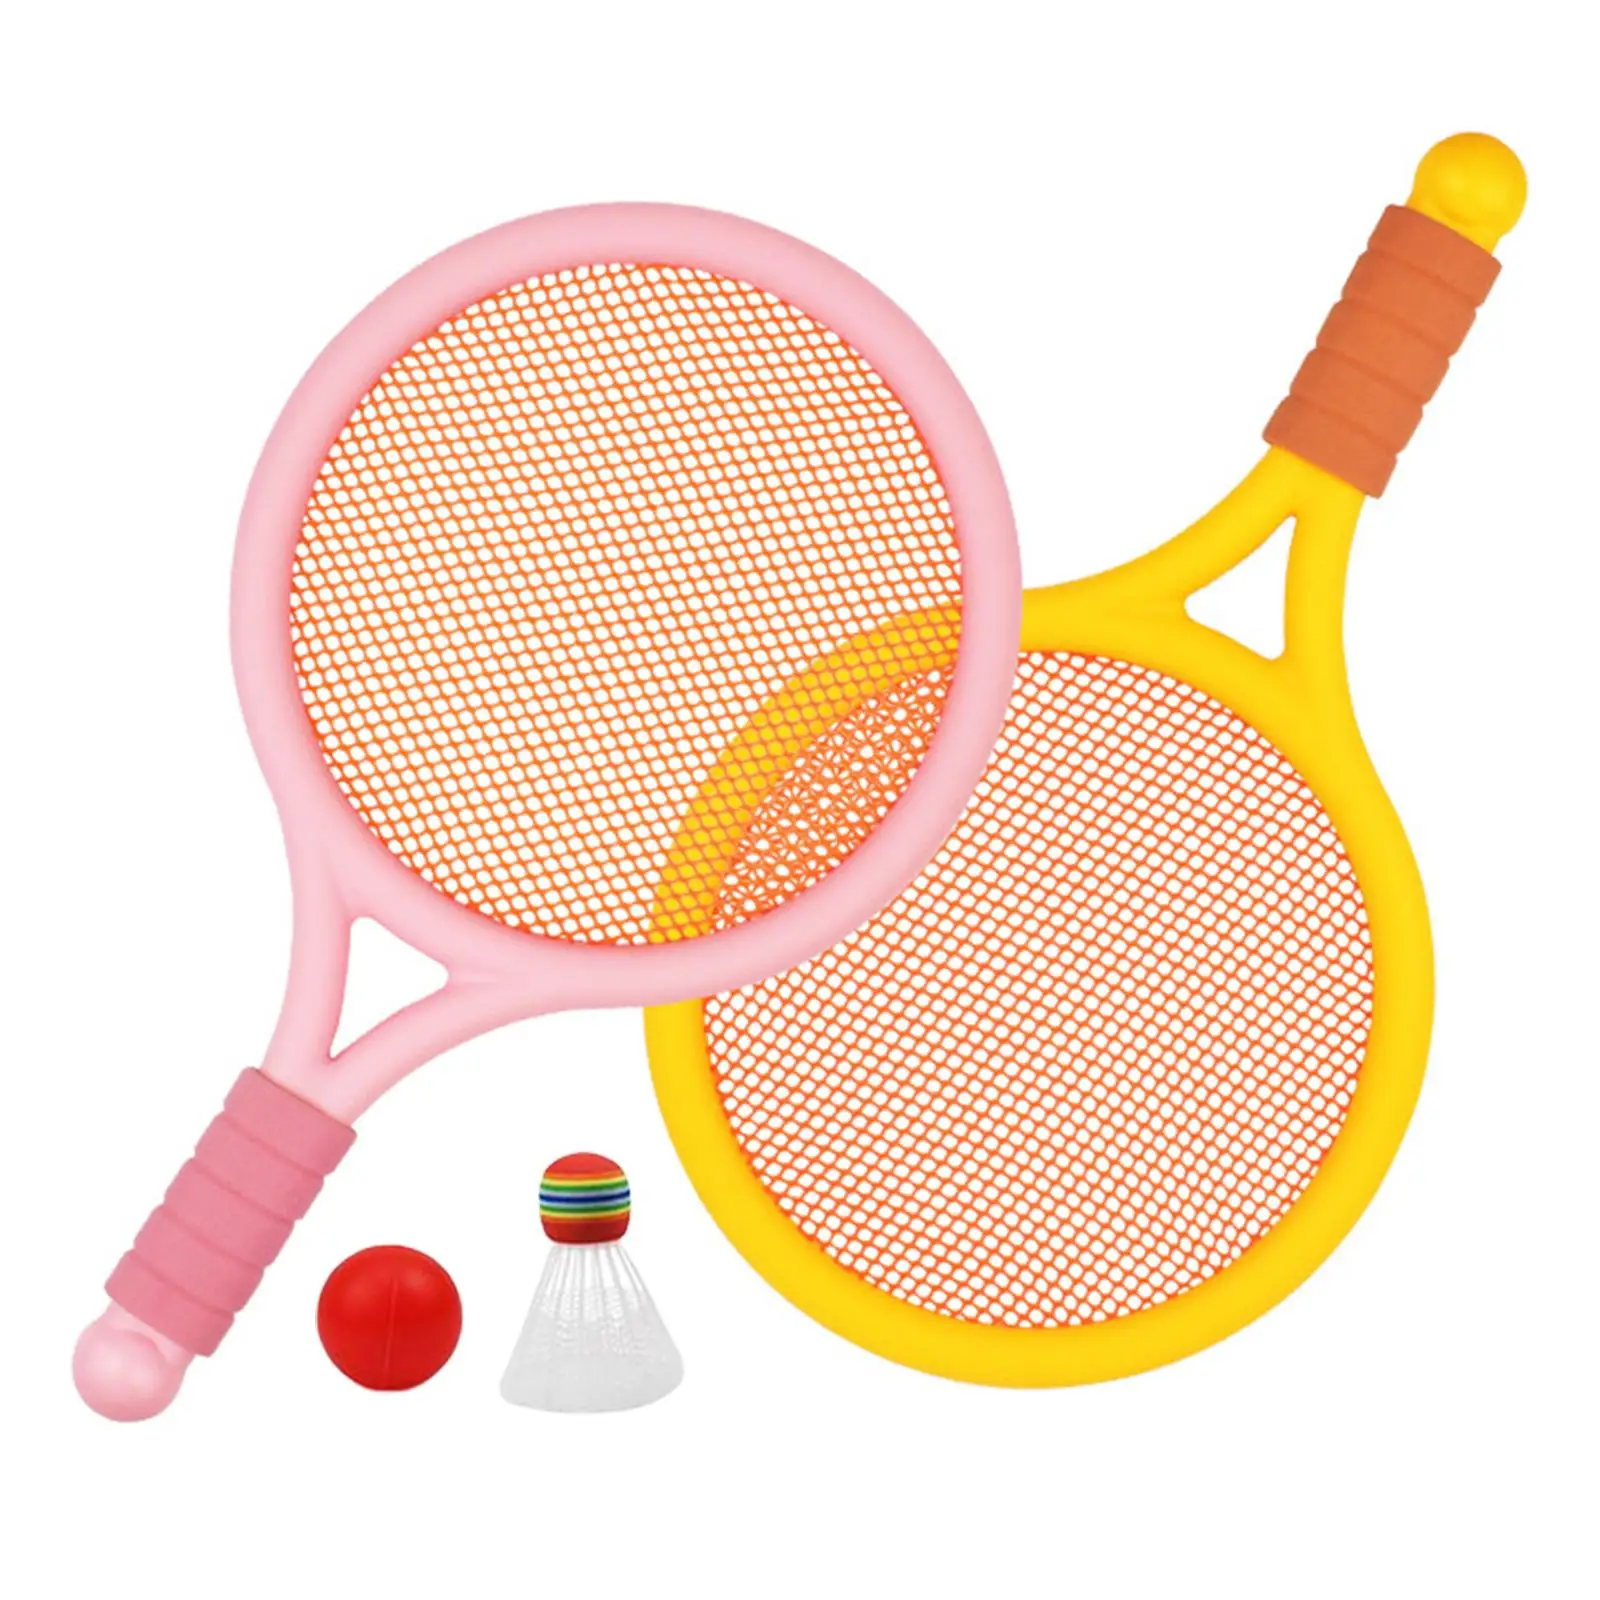 

Lightweight Kids Badminton Tennis Set with Tennis Ball and Shuttlecock Badminton Racket for Starter Players Girls Beach Boys